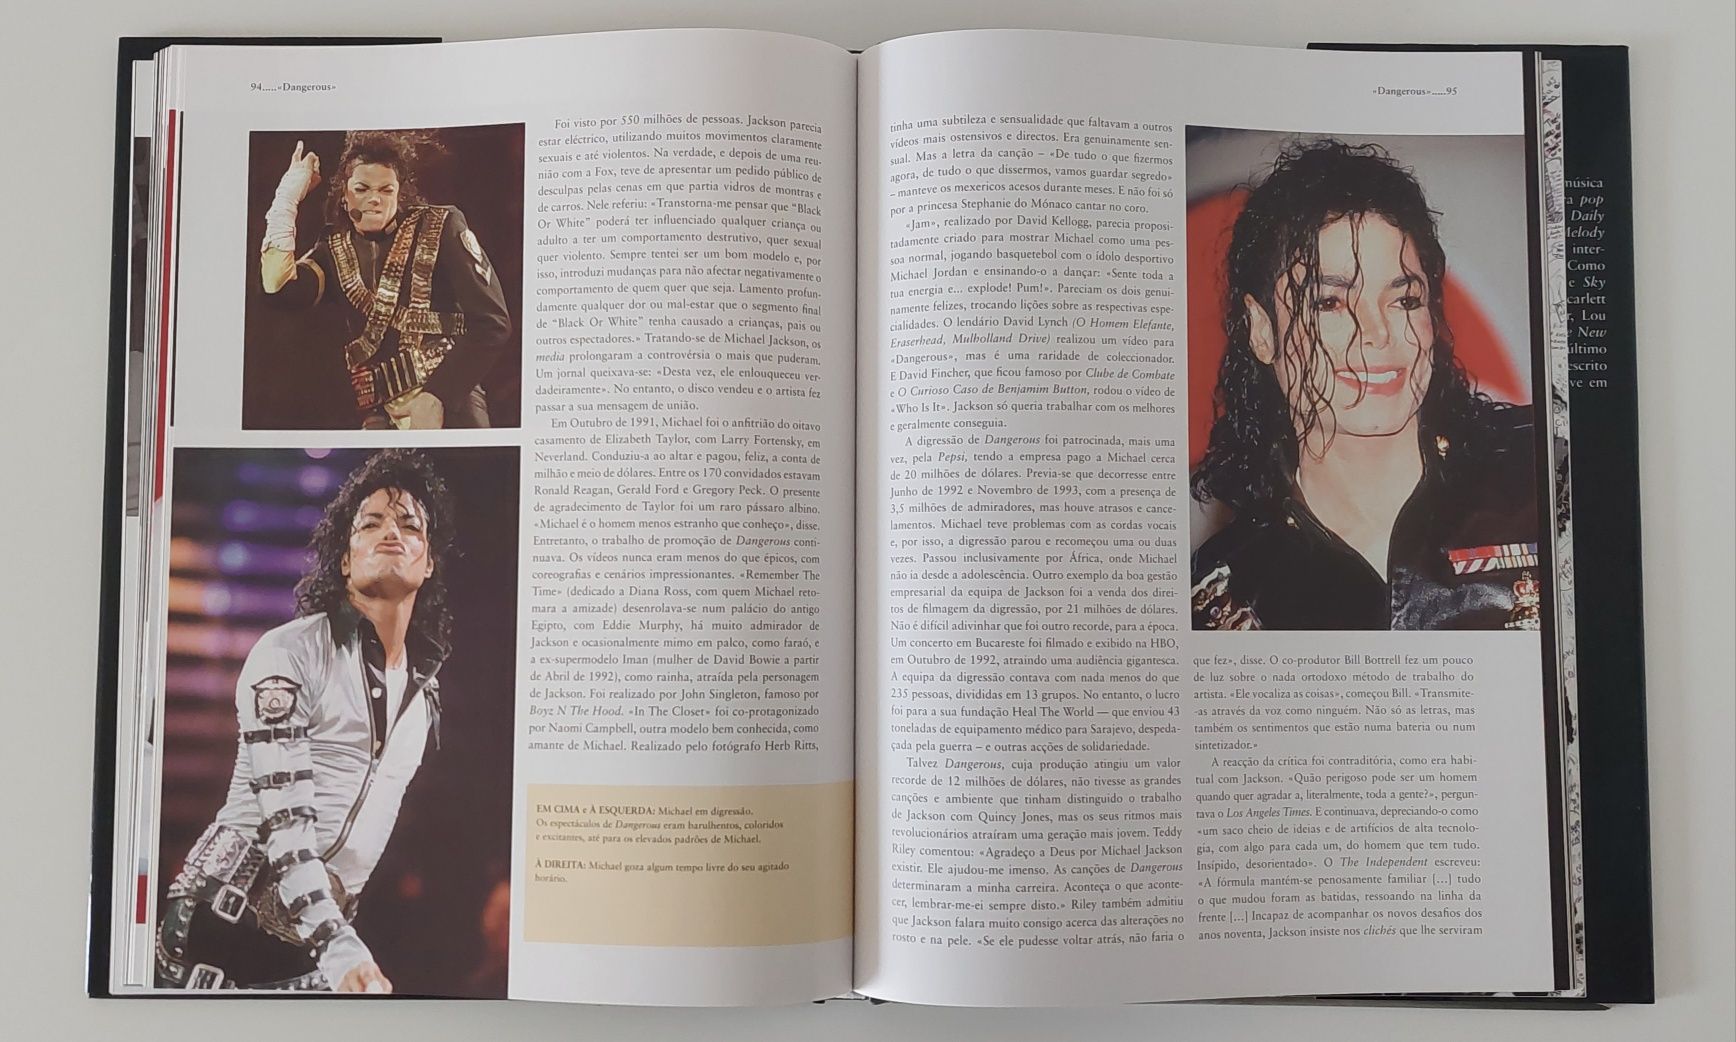 Livro Michael Jackson O Rei da Pop 1958/2009